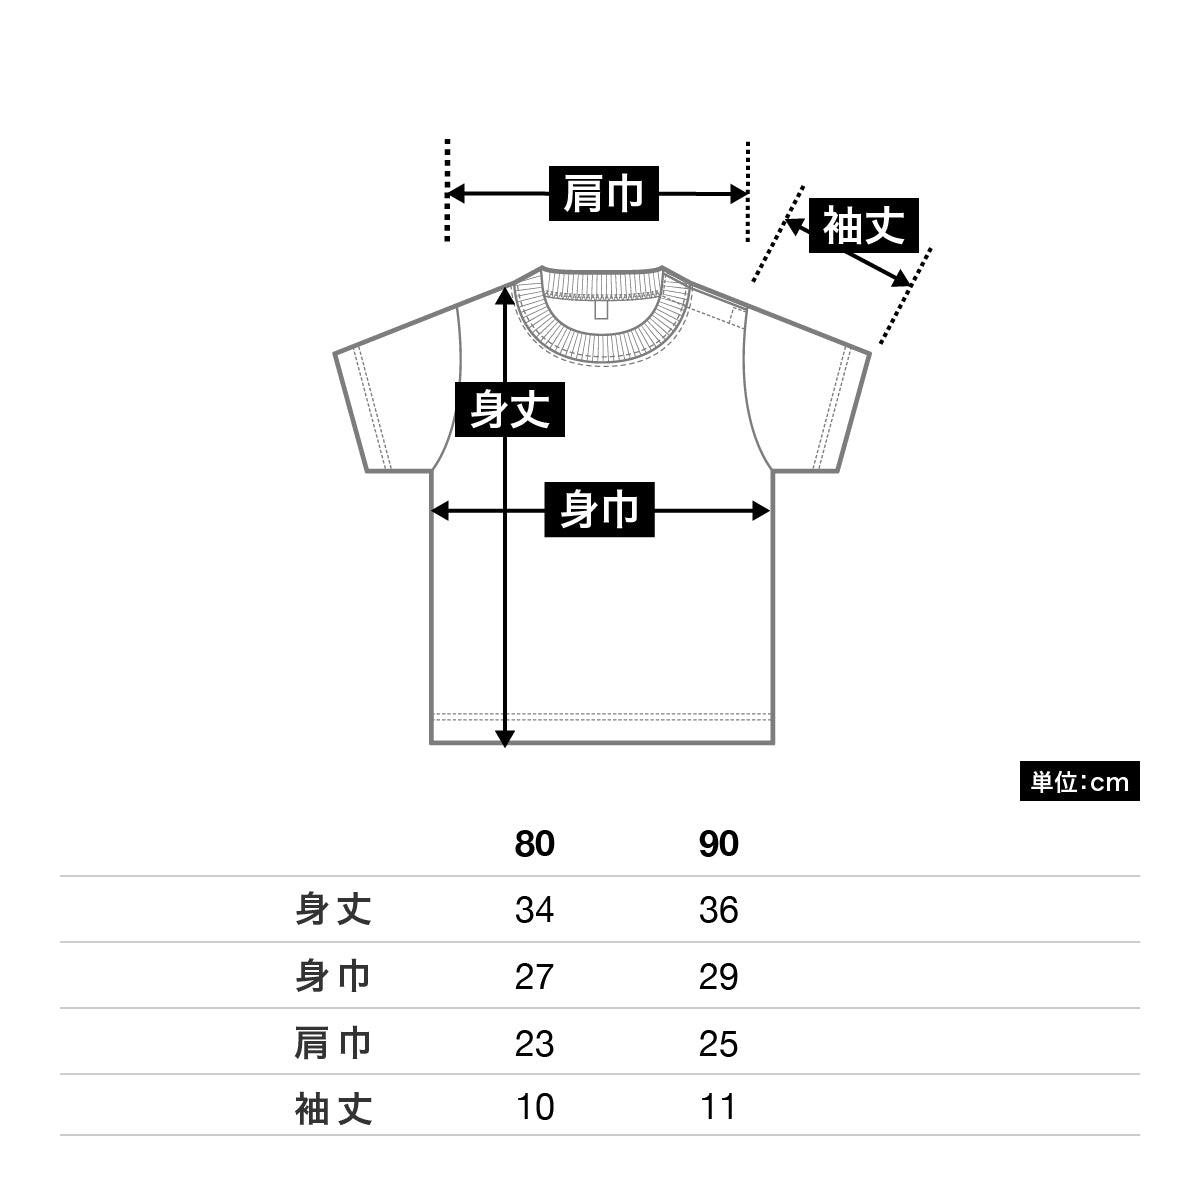 5.6オンス ヘビーウェイトベビーTシャツ | キッズ | 1枚 | 00103-CBT | ライトグリーン